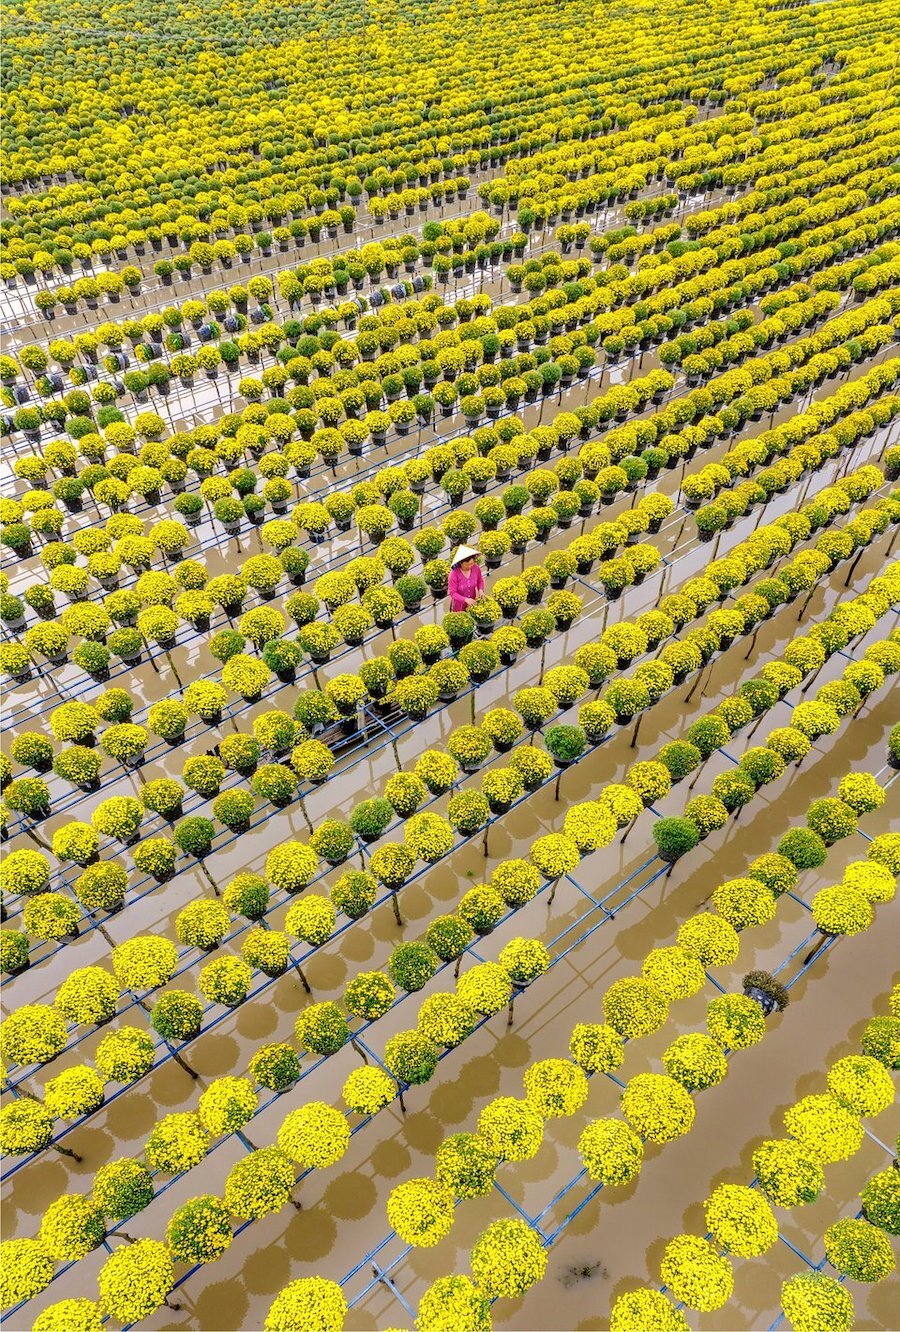 Hình ảnh quen thuộc của các vườn trồng hoa ở làng hoa Sa Đéc, một điểm du lịch nổi tiếng của tỉnh Đồng Tháp. Ảnh có tên “Hoa trên nước” do Thuần Võ chụp.